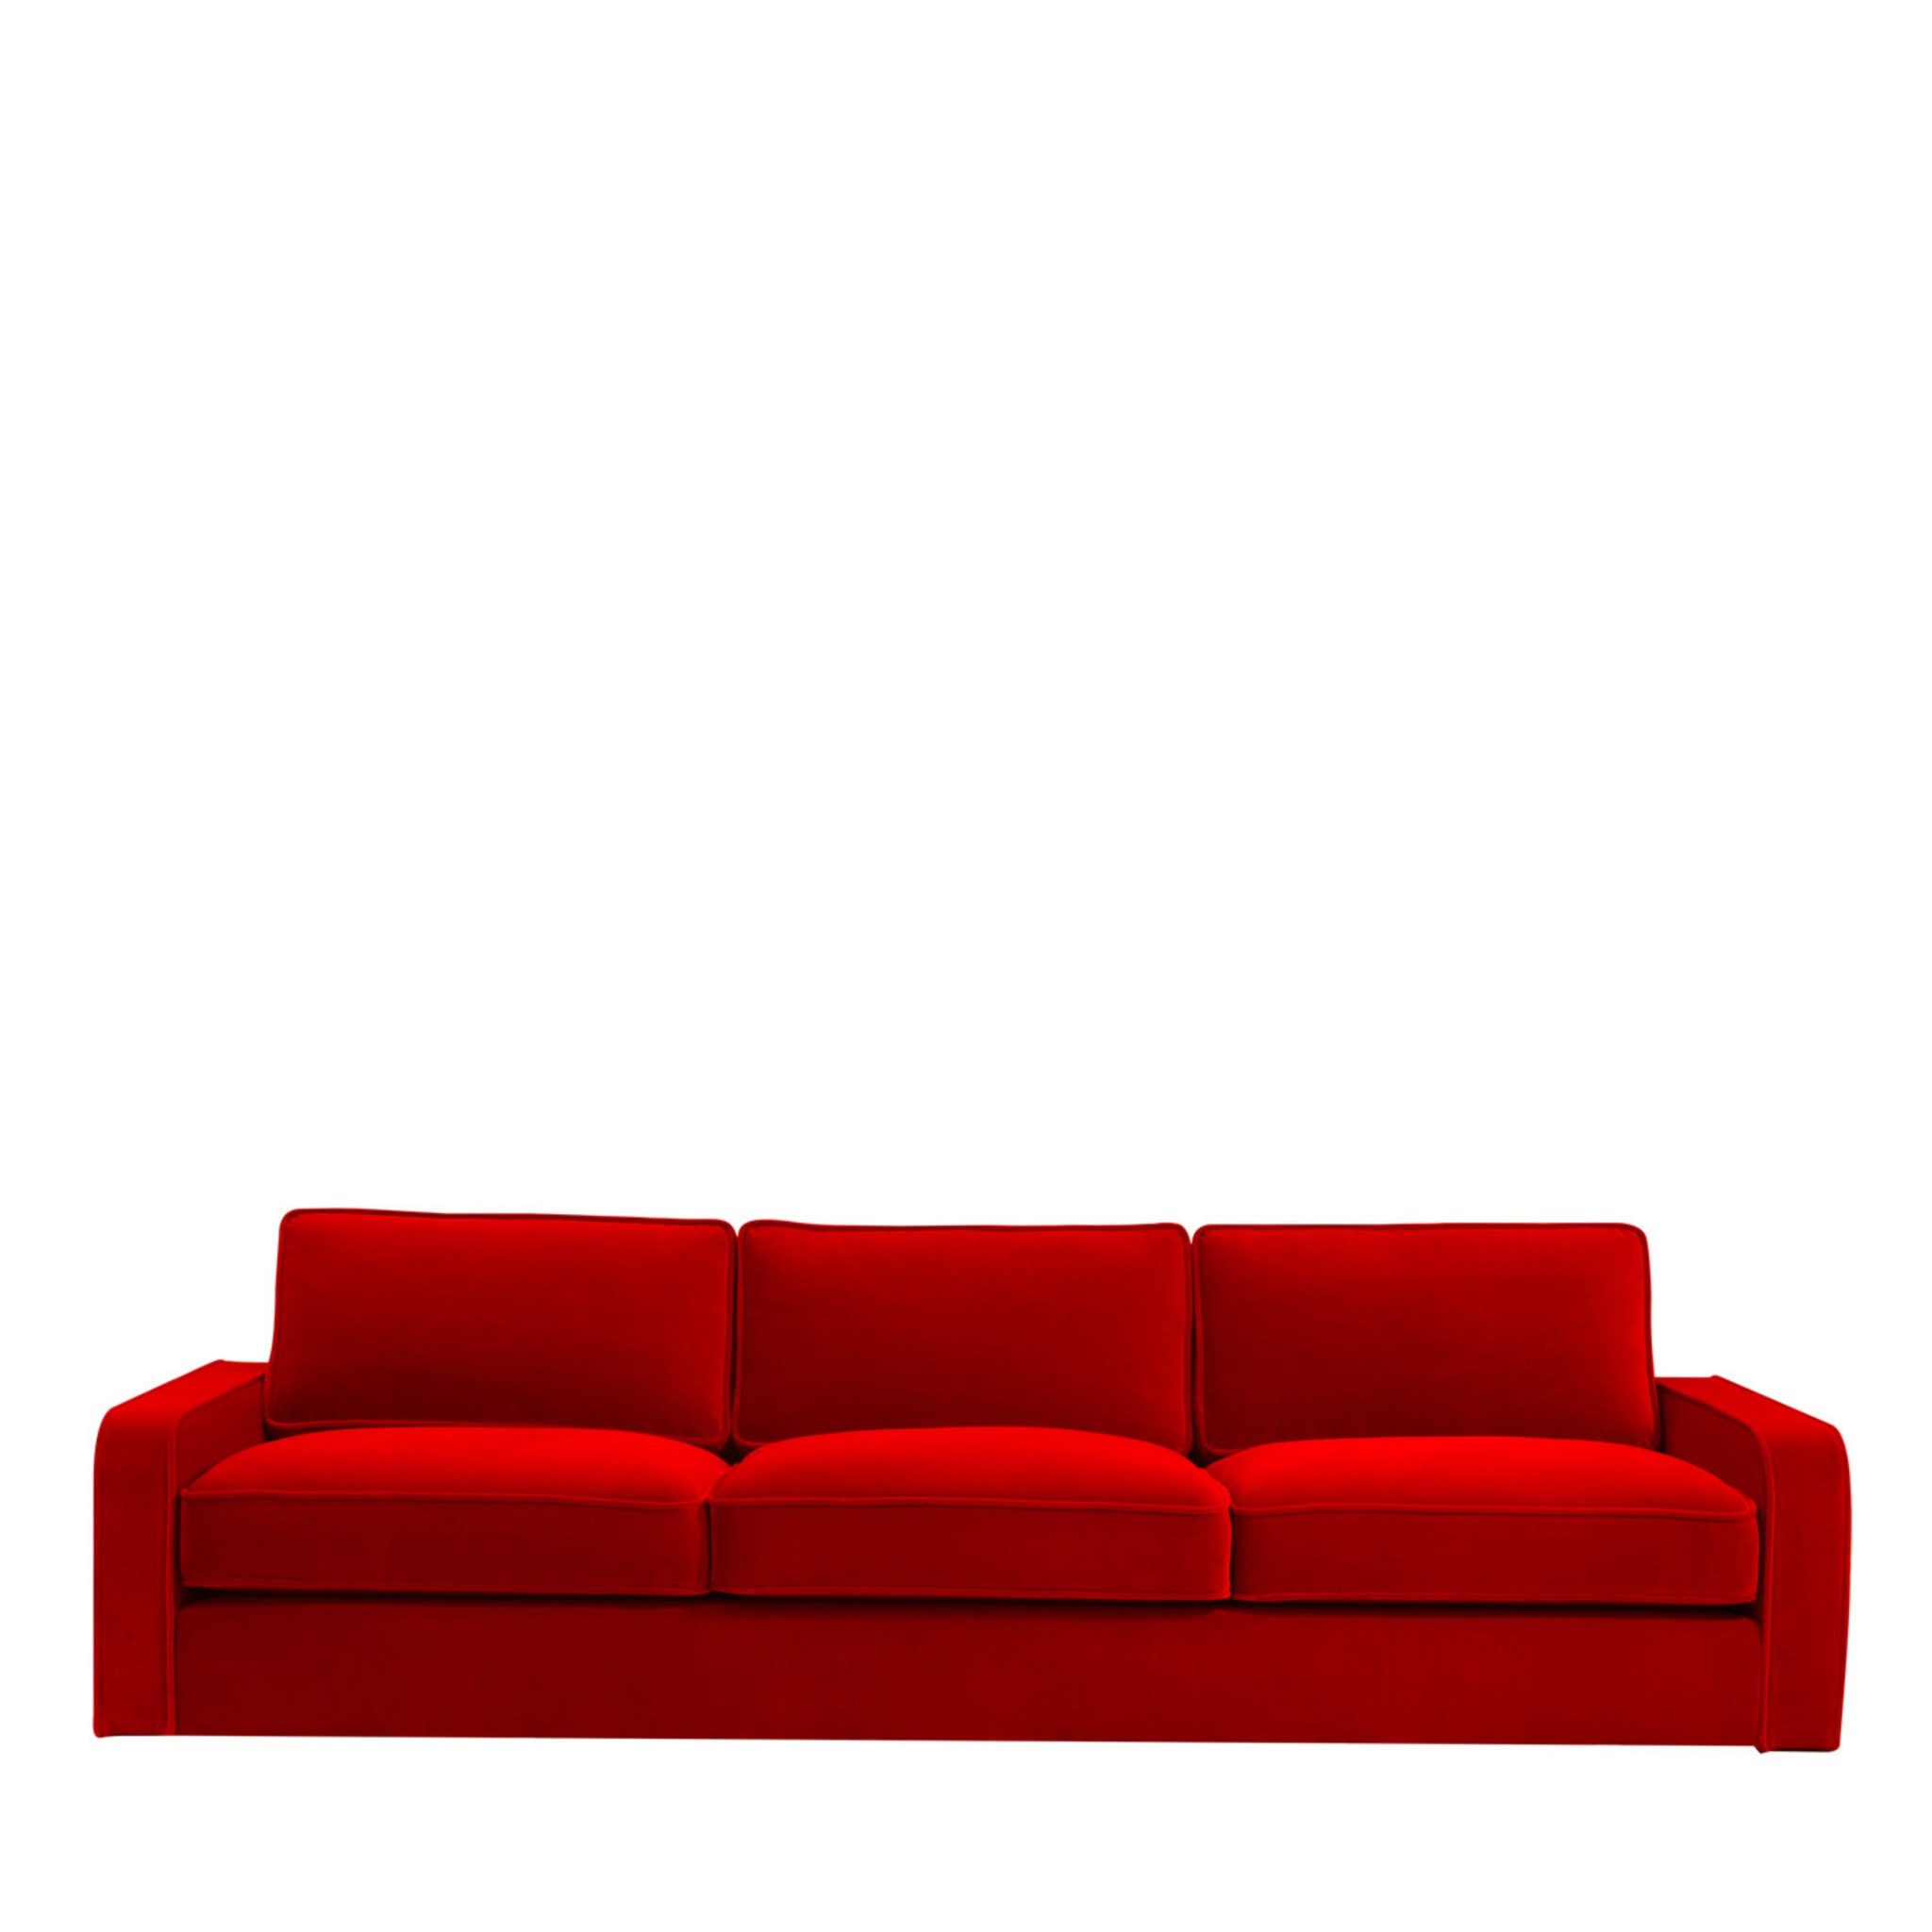 Canapé rouge Romeo - Vue principale